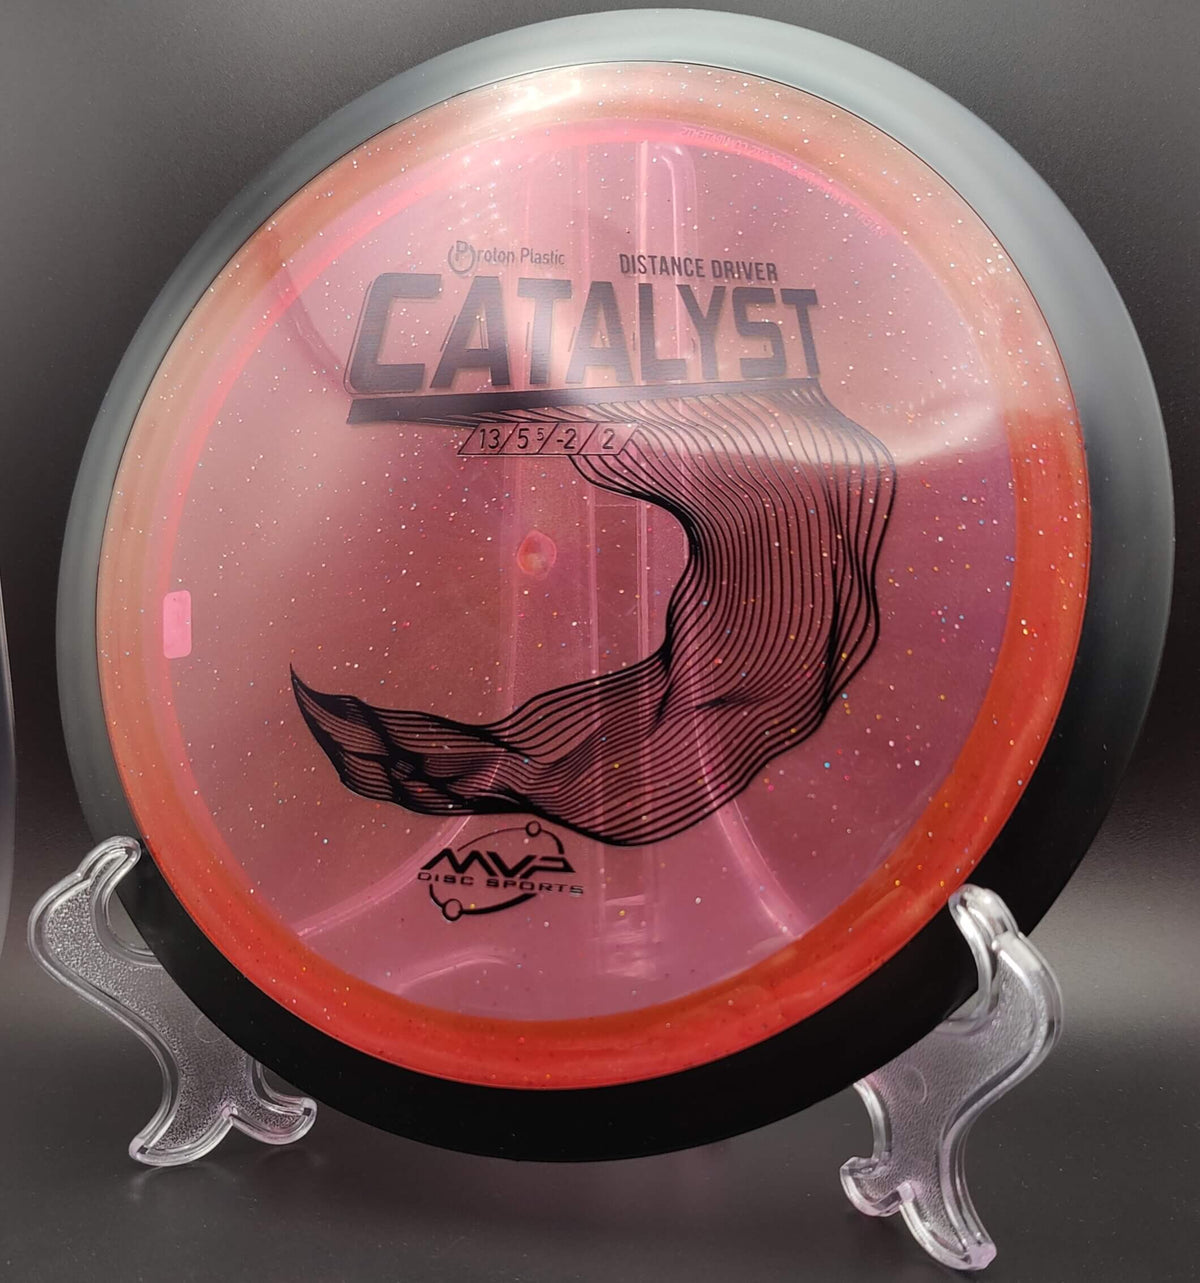 MVP Catalyst - Proton